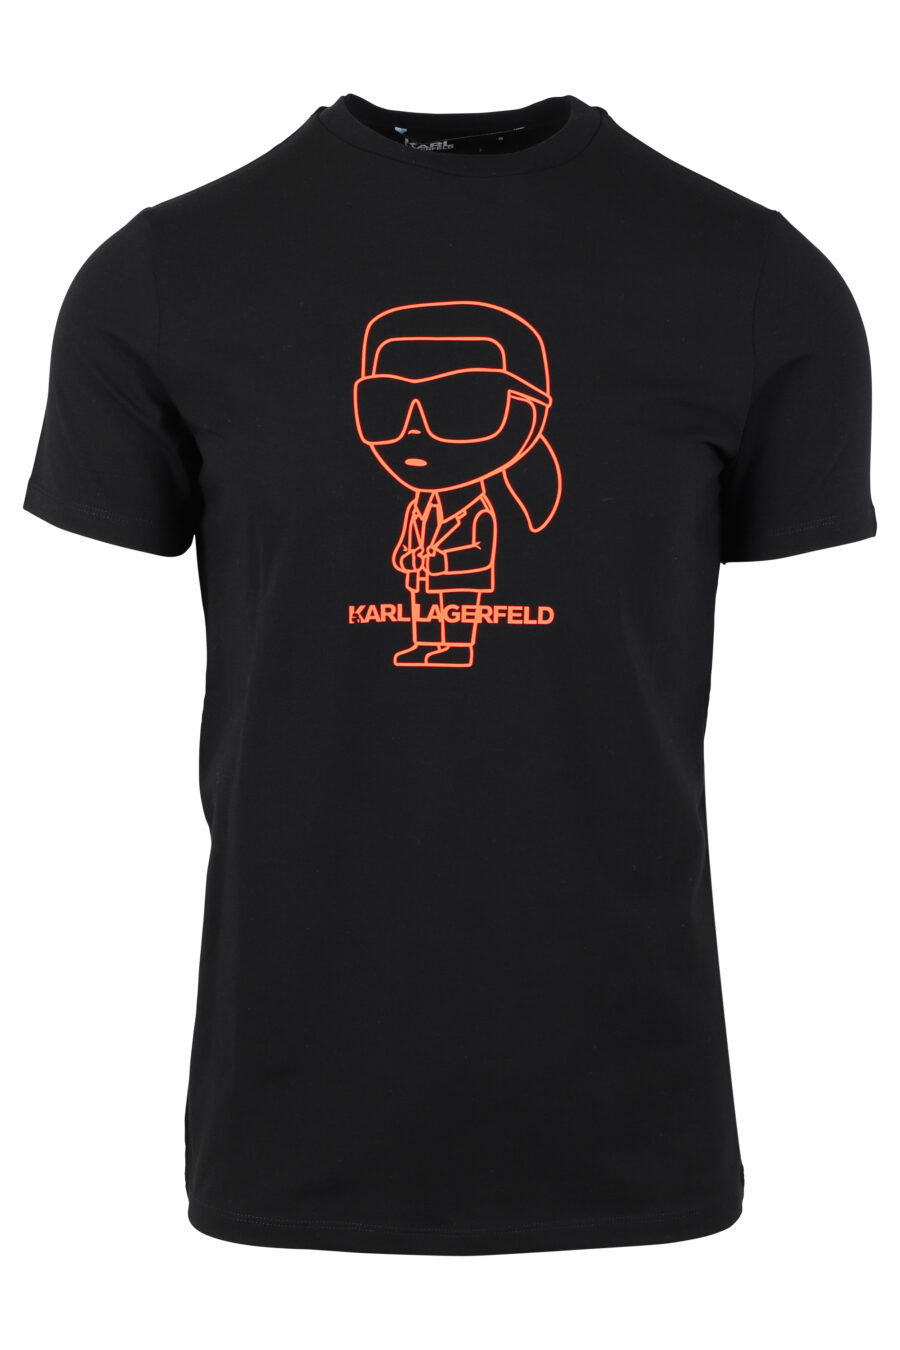 Camiseta negra con maxilogo "karl" en silueta naranja - IMG 4692